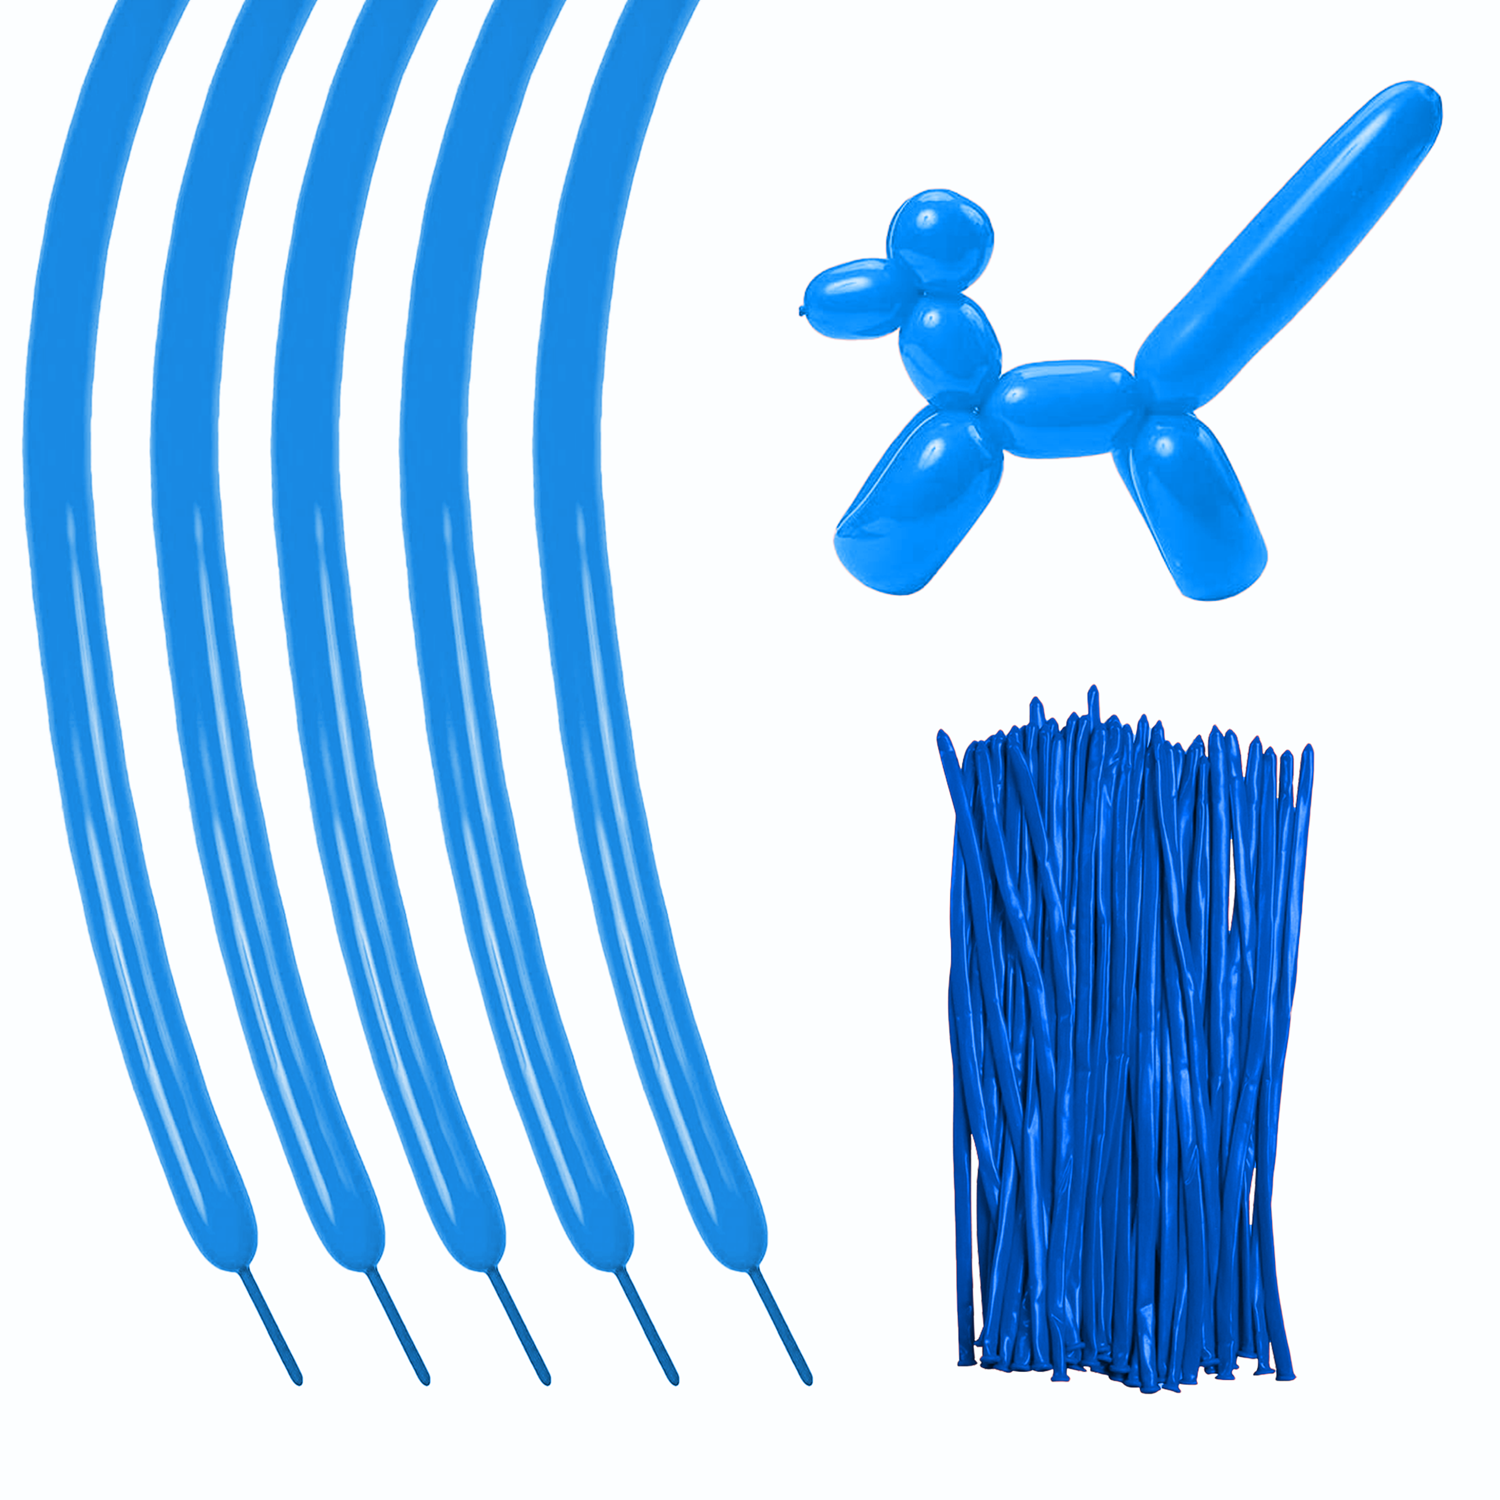 Globos azul rey de 9 pulgadas (5000 pzas) - Tilco Balloons